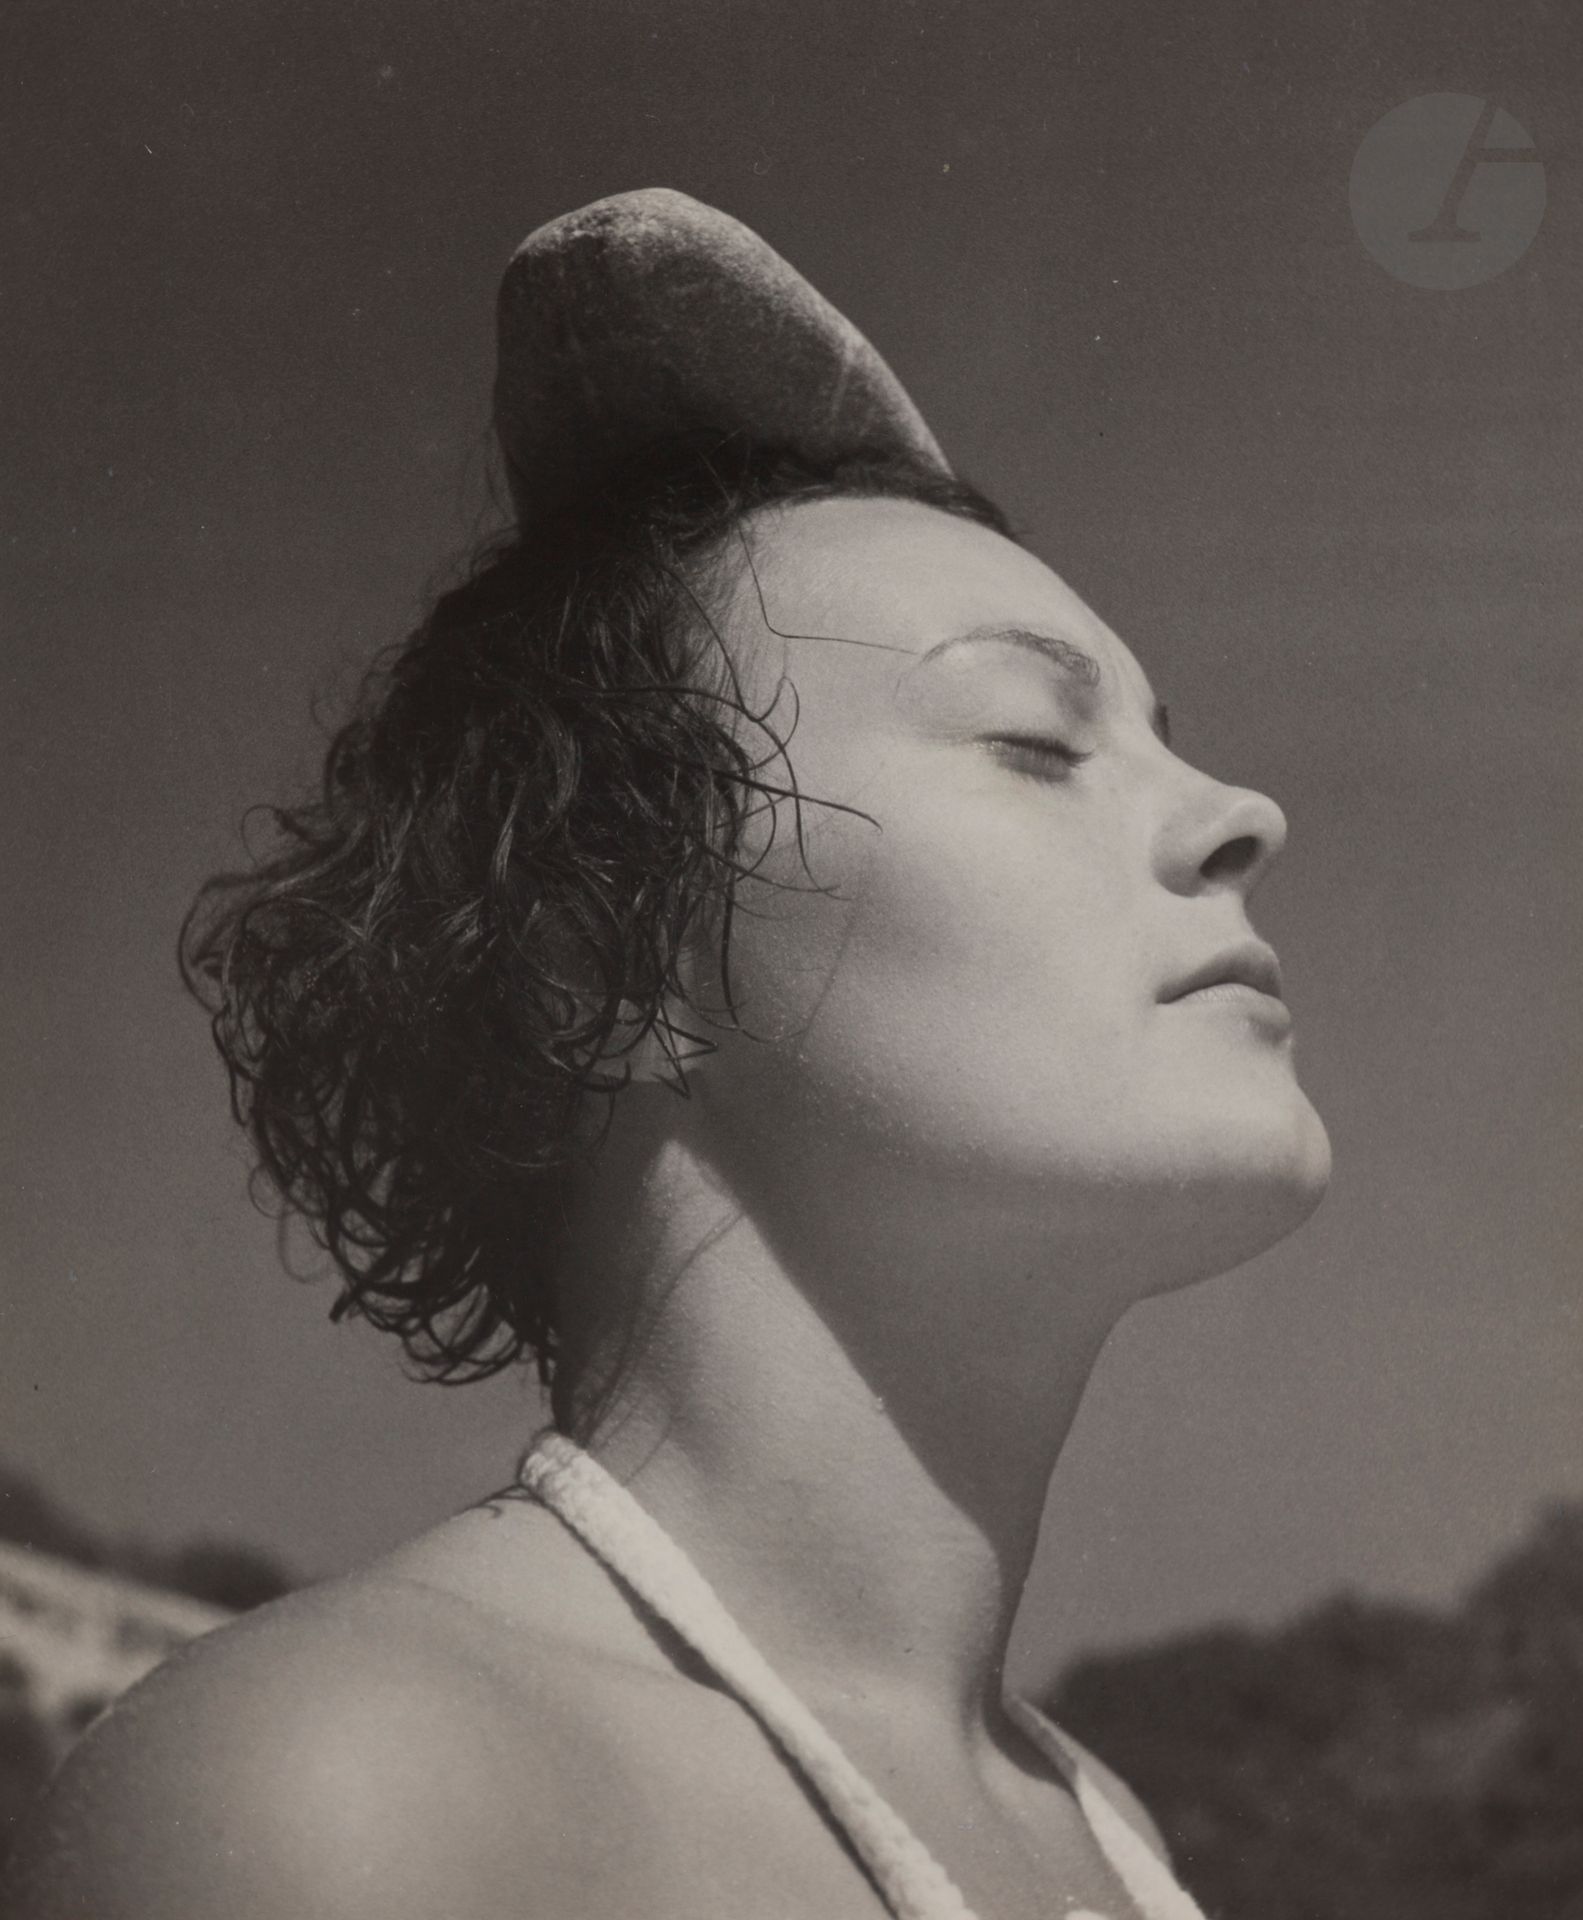 Null Jean Moral (1906-1999)
Juliette, einen Kieselstein auf dem Kopf. Formentor,&hellip;